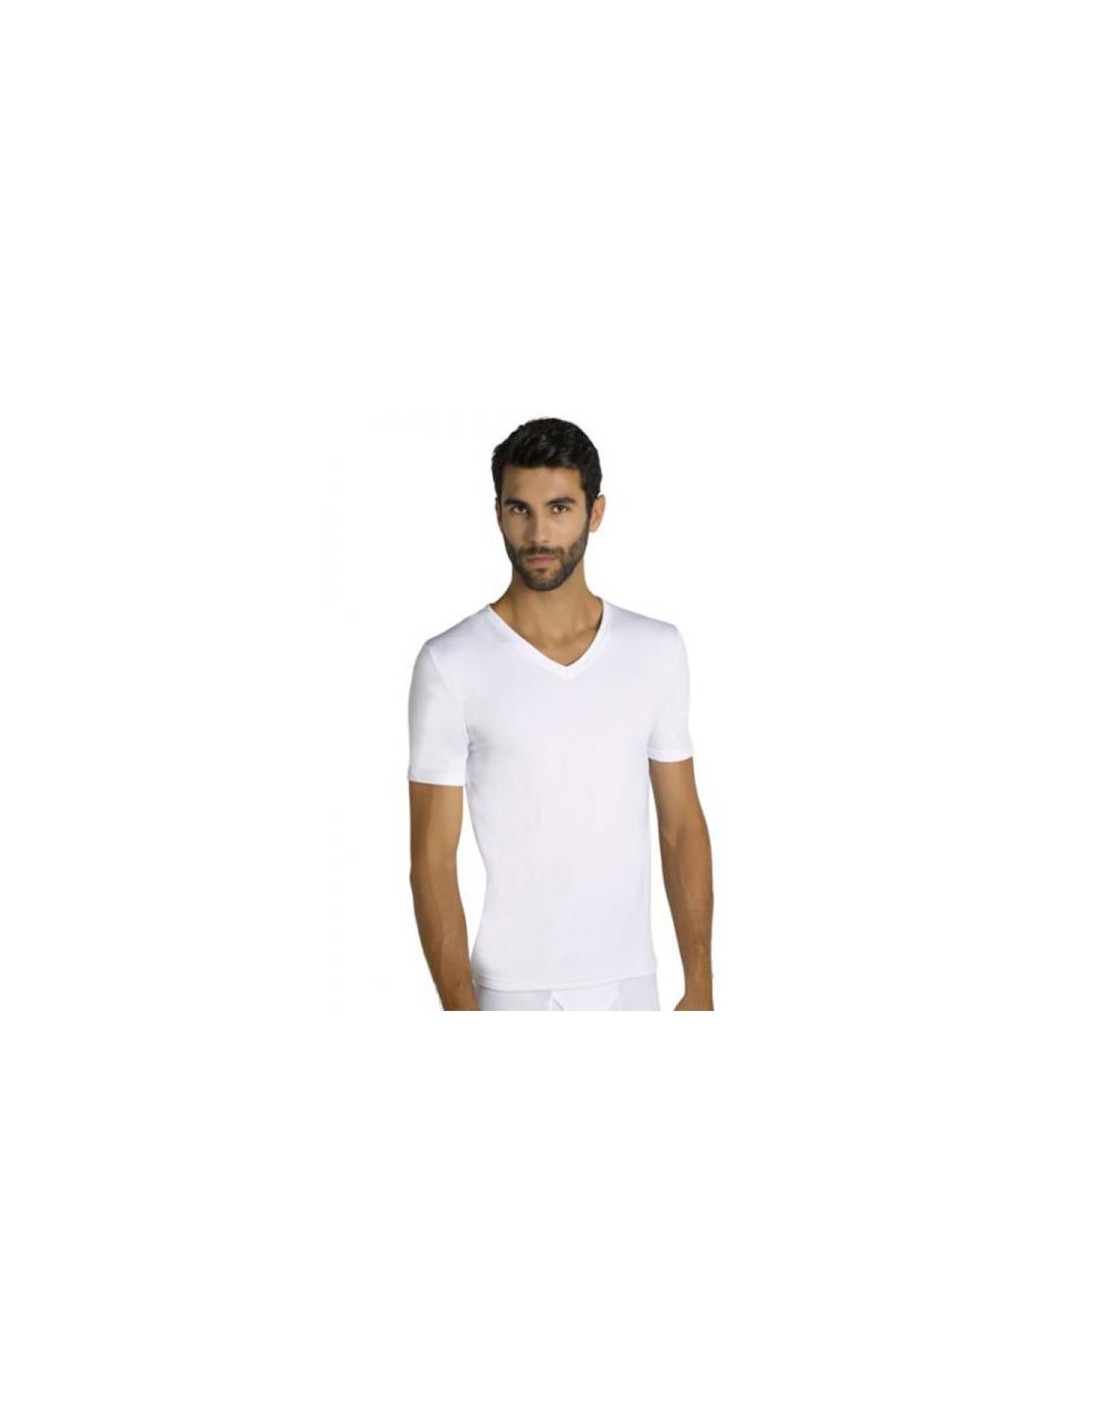 Camiseta Térmica Hombre Manga Corta 70103 Ysabel Mora - Cálida y suave